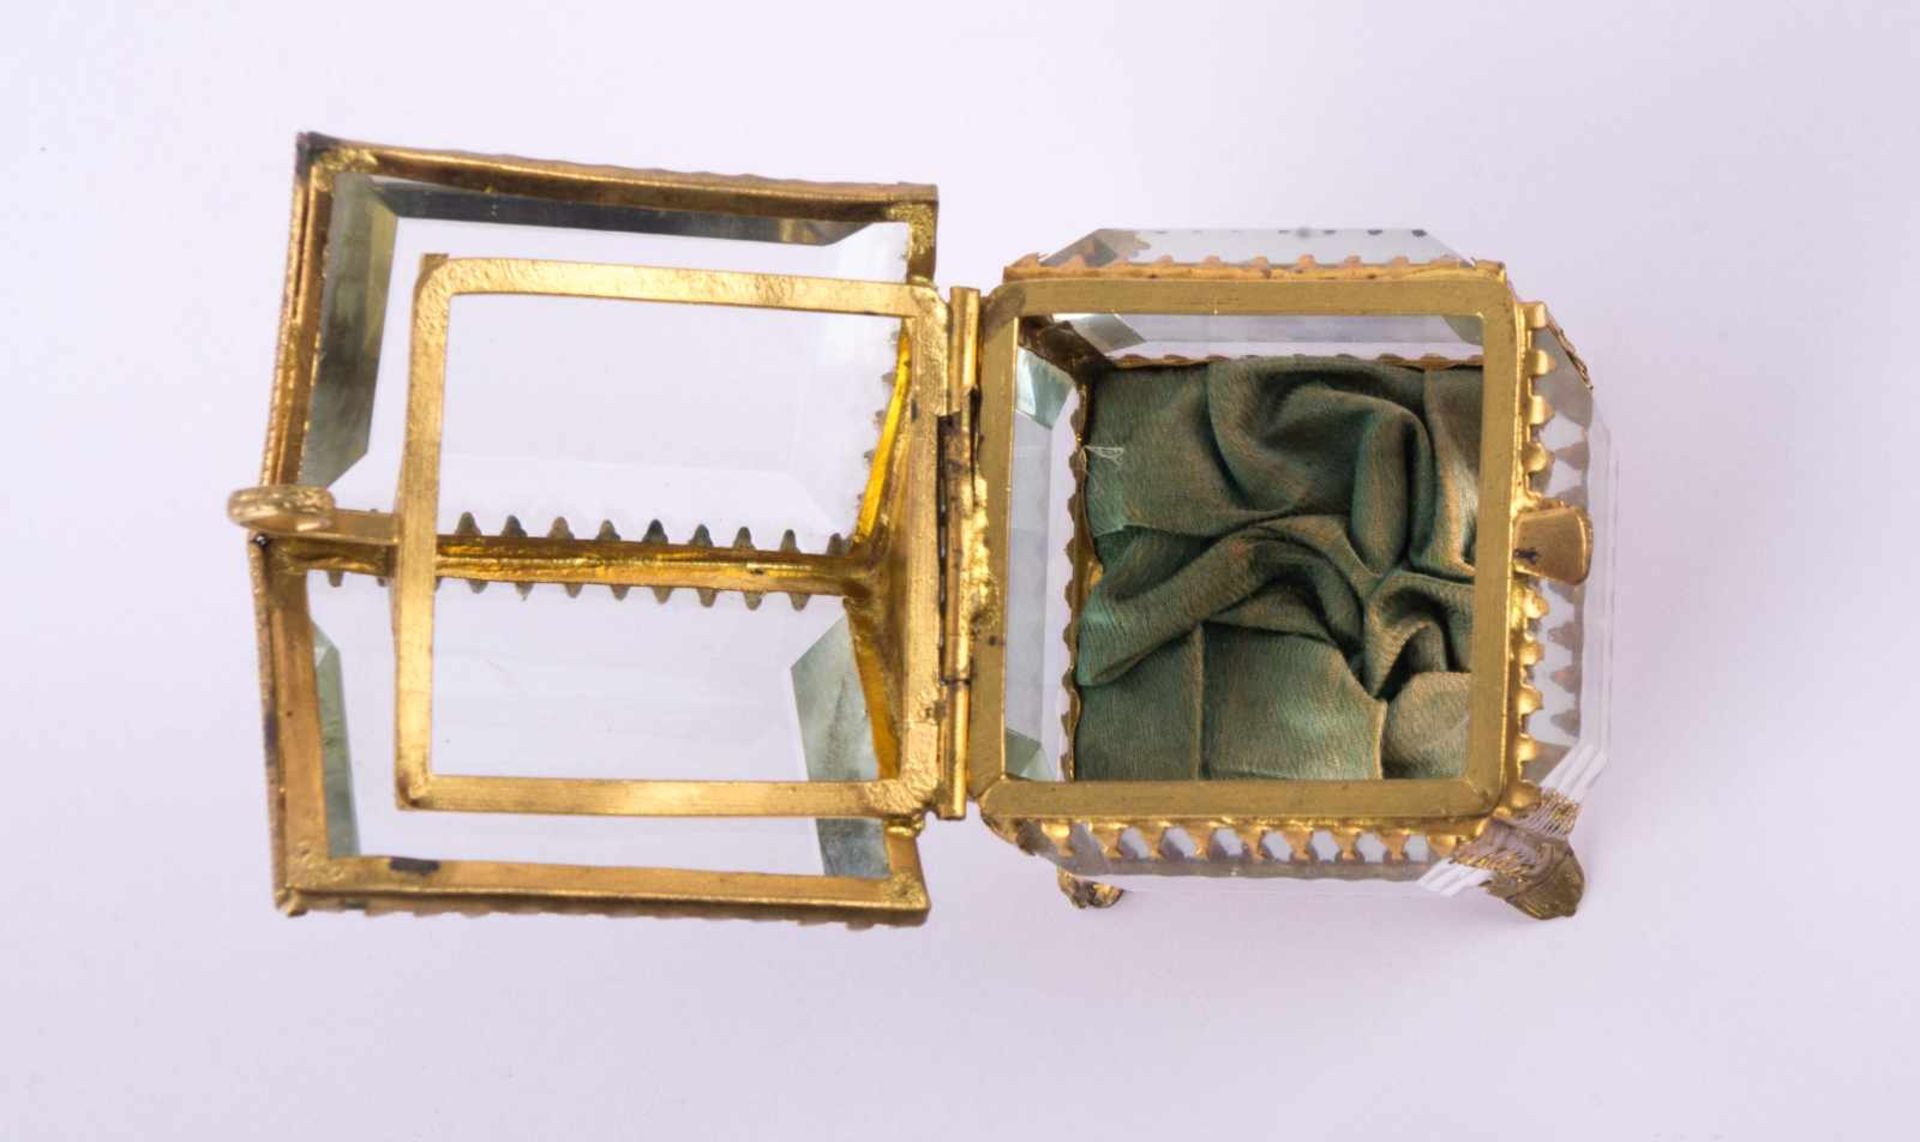 kleines Schmuckkästchen um 1900 Messing mit facettierten Scheiben, aufklappbar, ca. 8 cm x 6 cm x - Bild 3 aus 3